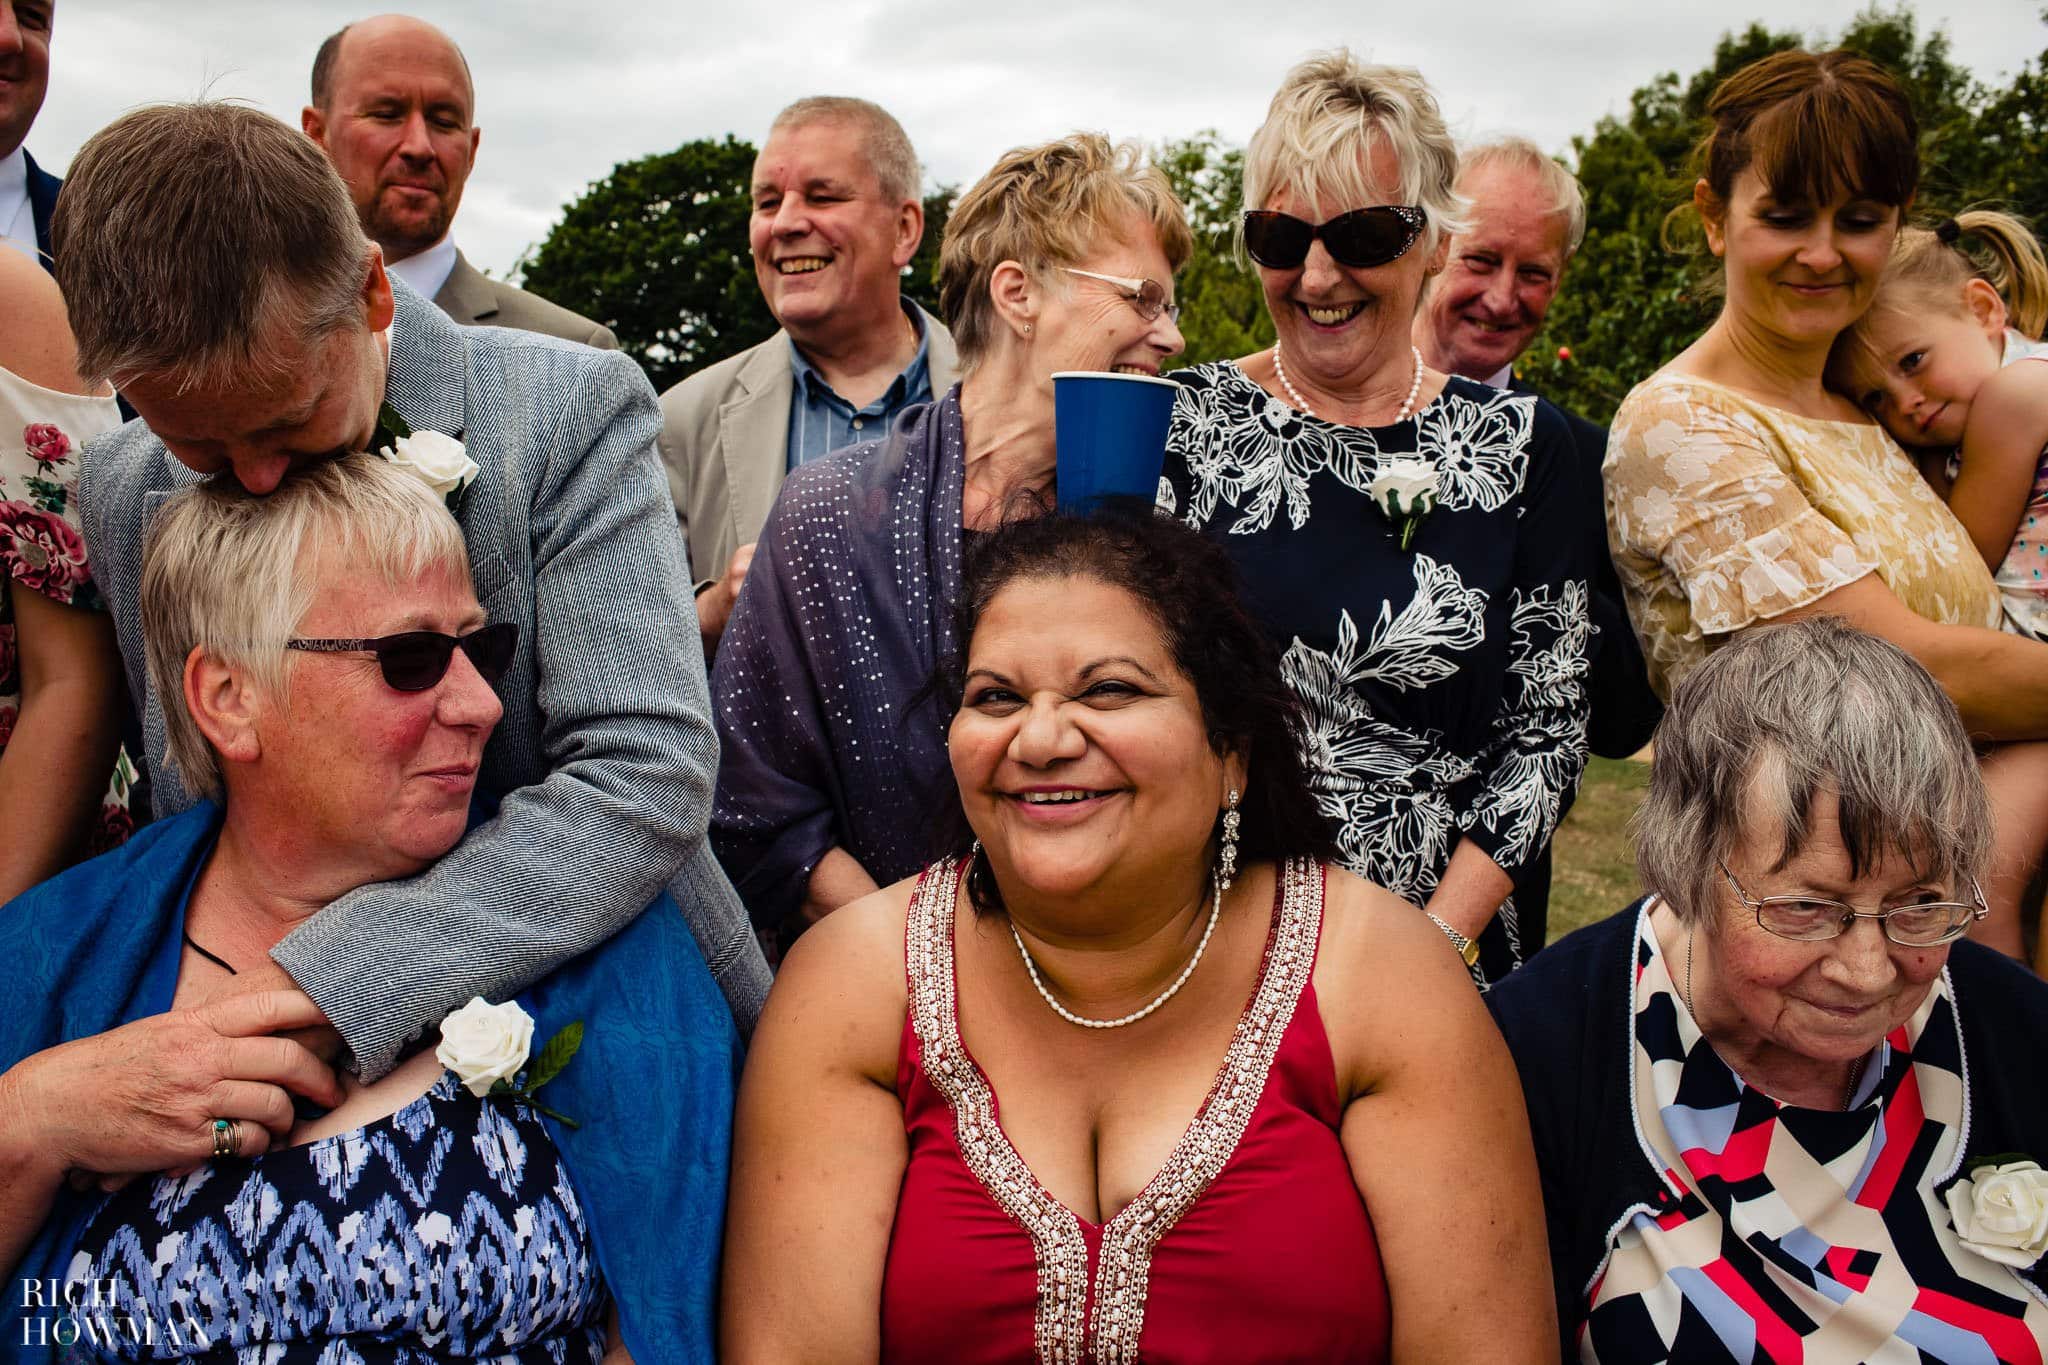 Wedding Photographers Bristol Wedding at Folly Farm